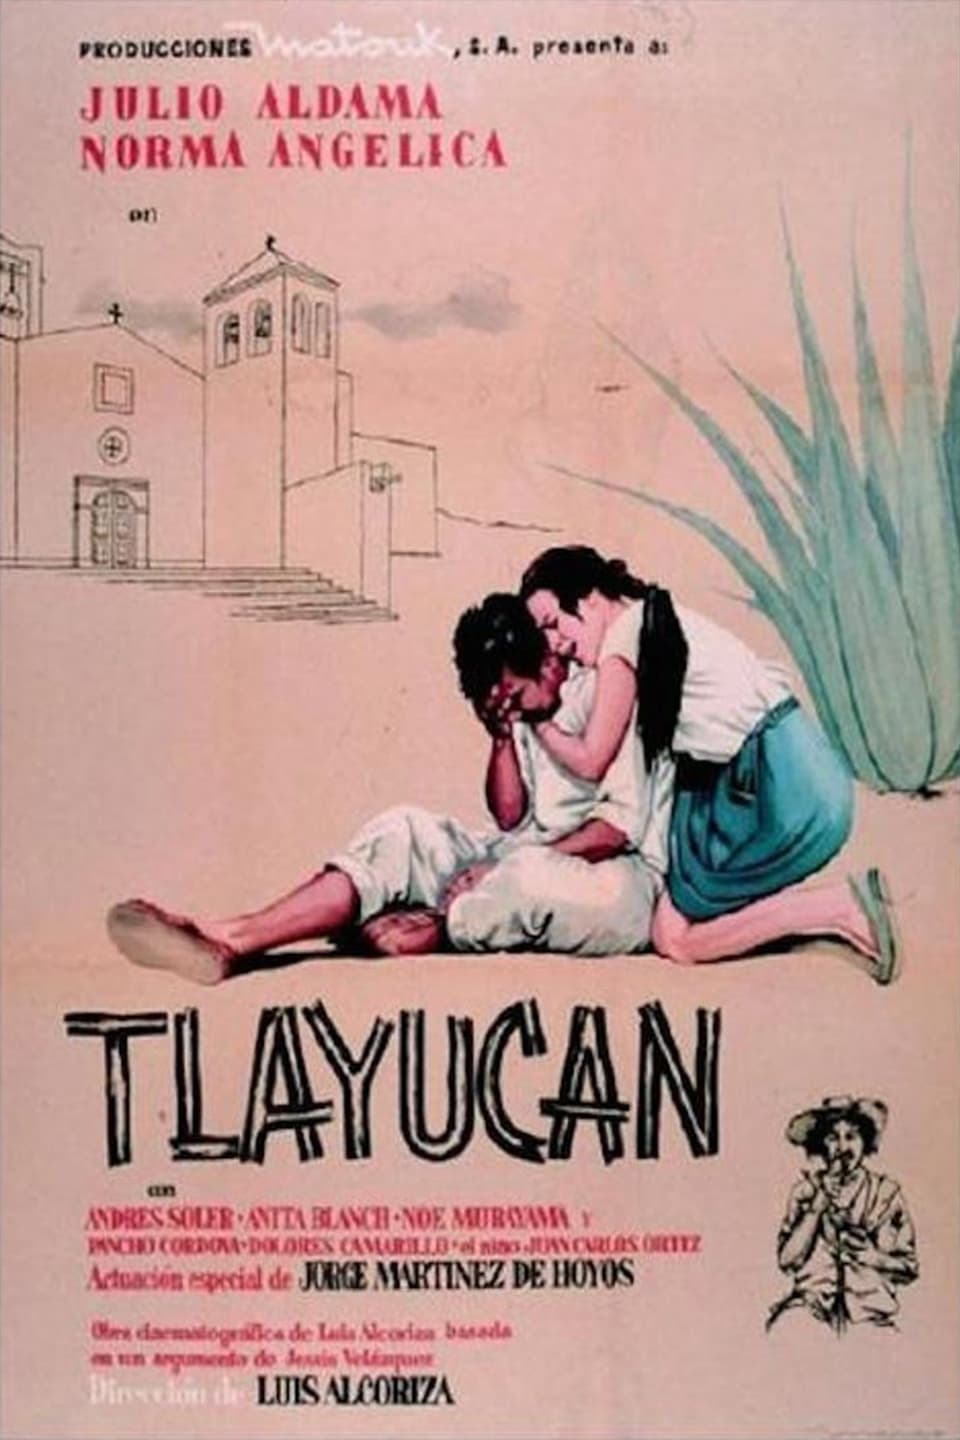 Tlayucan